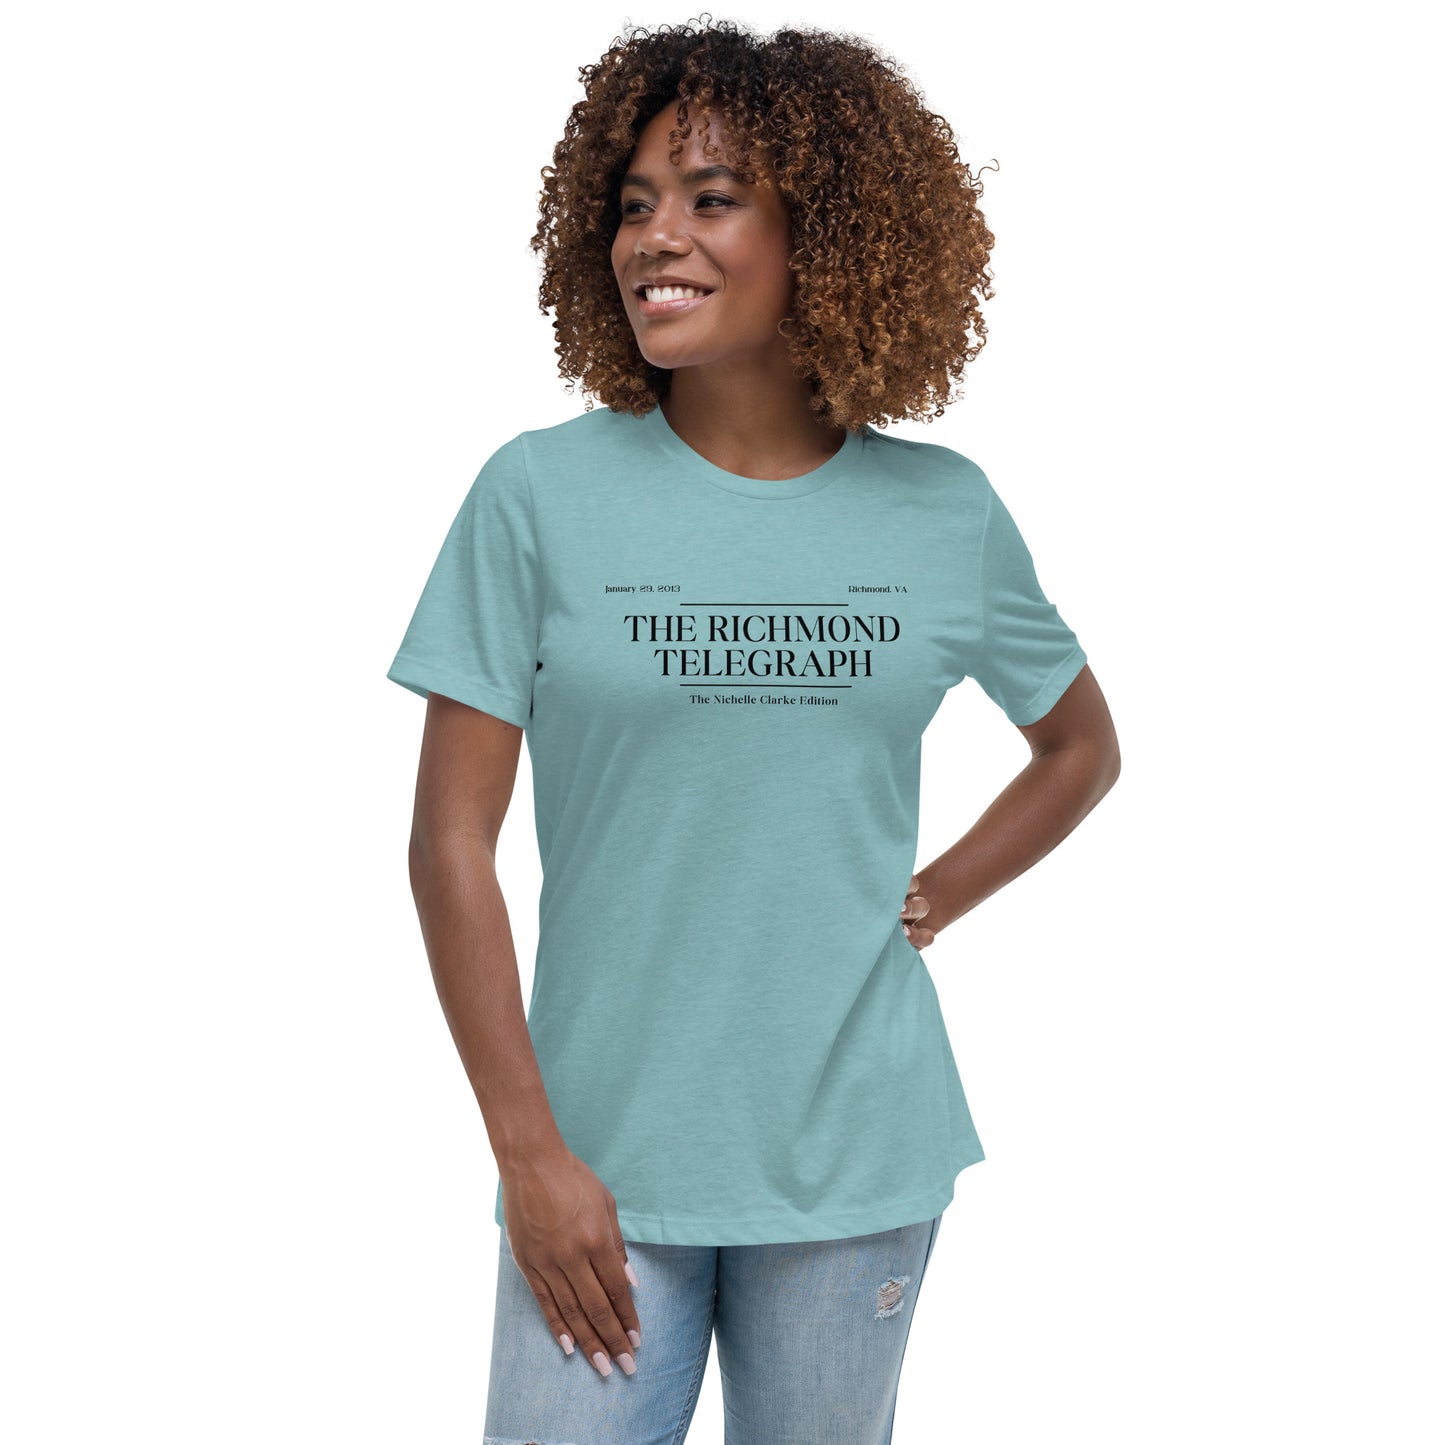 Nichelle Clarke | Women's Relaxed T-Shirt